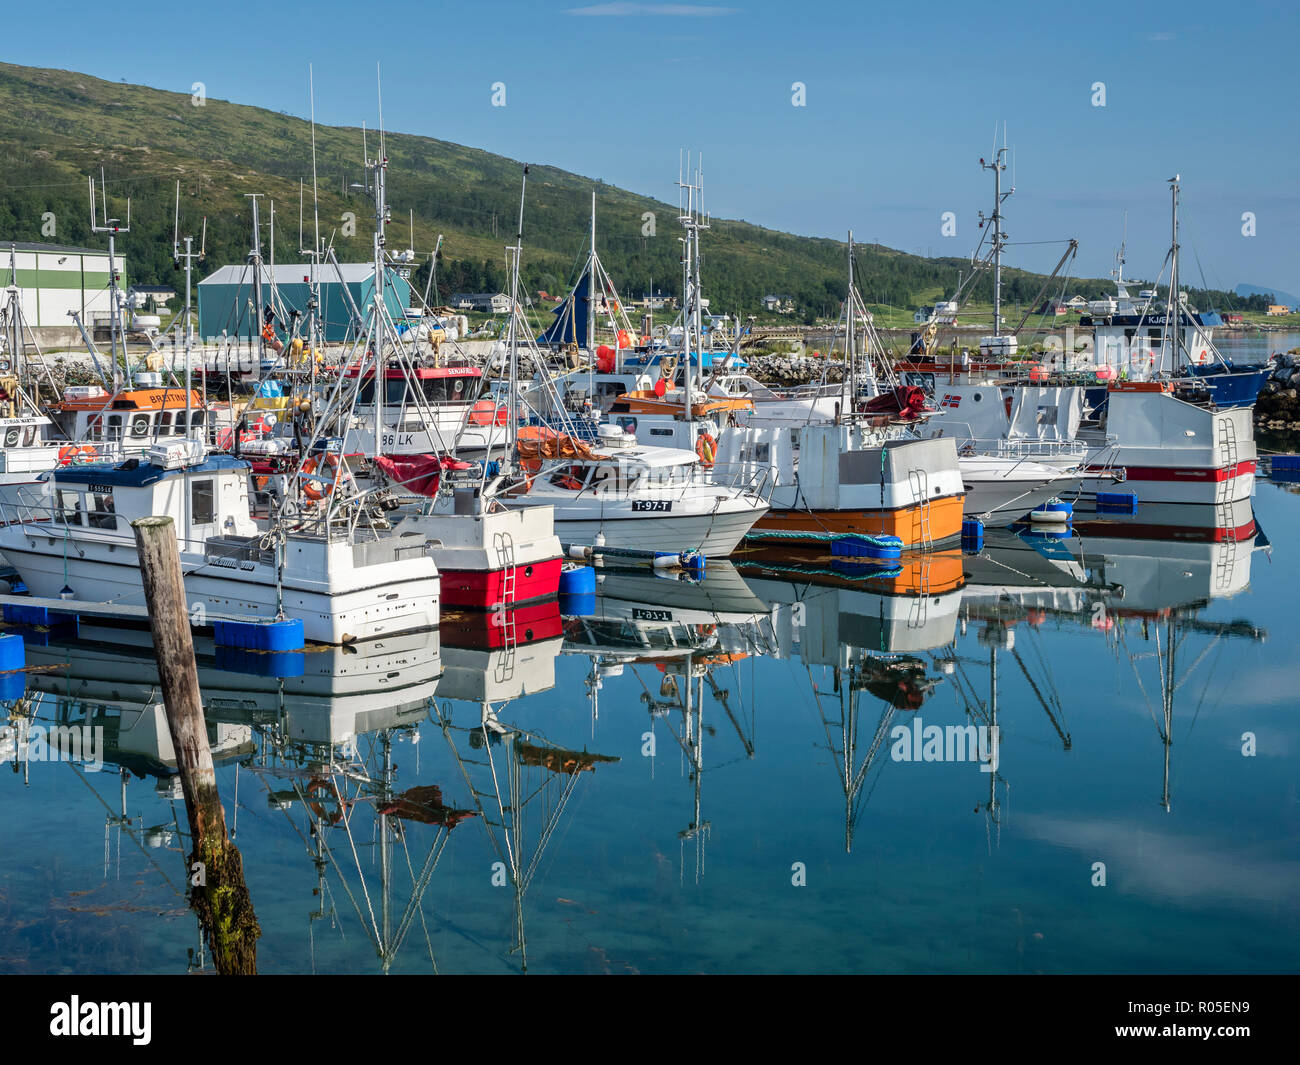 Botnham, porto di traghetto kai, ancoraggio dei pescherecci, calma e soleggiata giornata estiva, riflessioni sul mare calmo, Senja, Troms, Norvegia Foto Stock